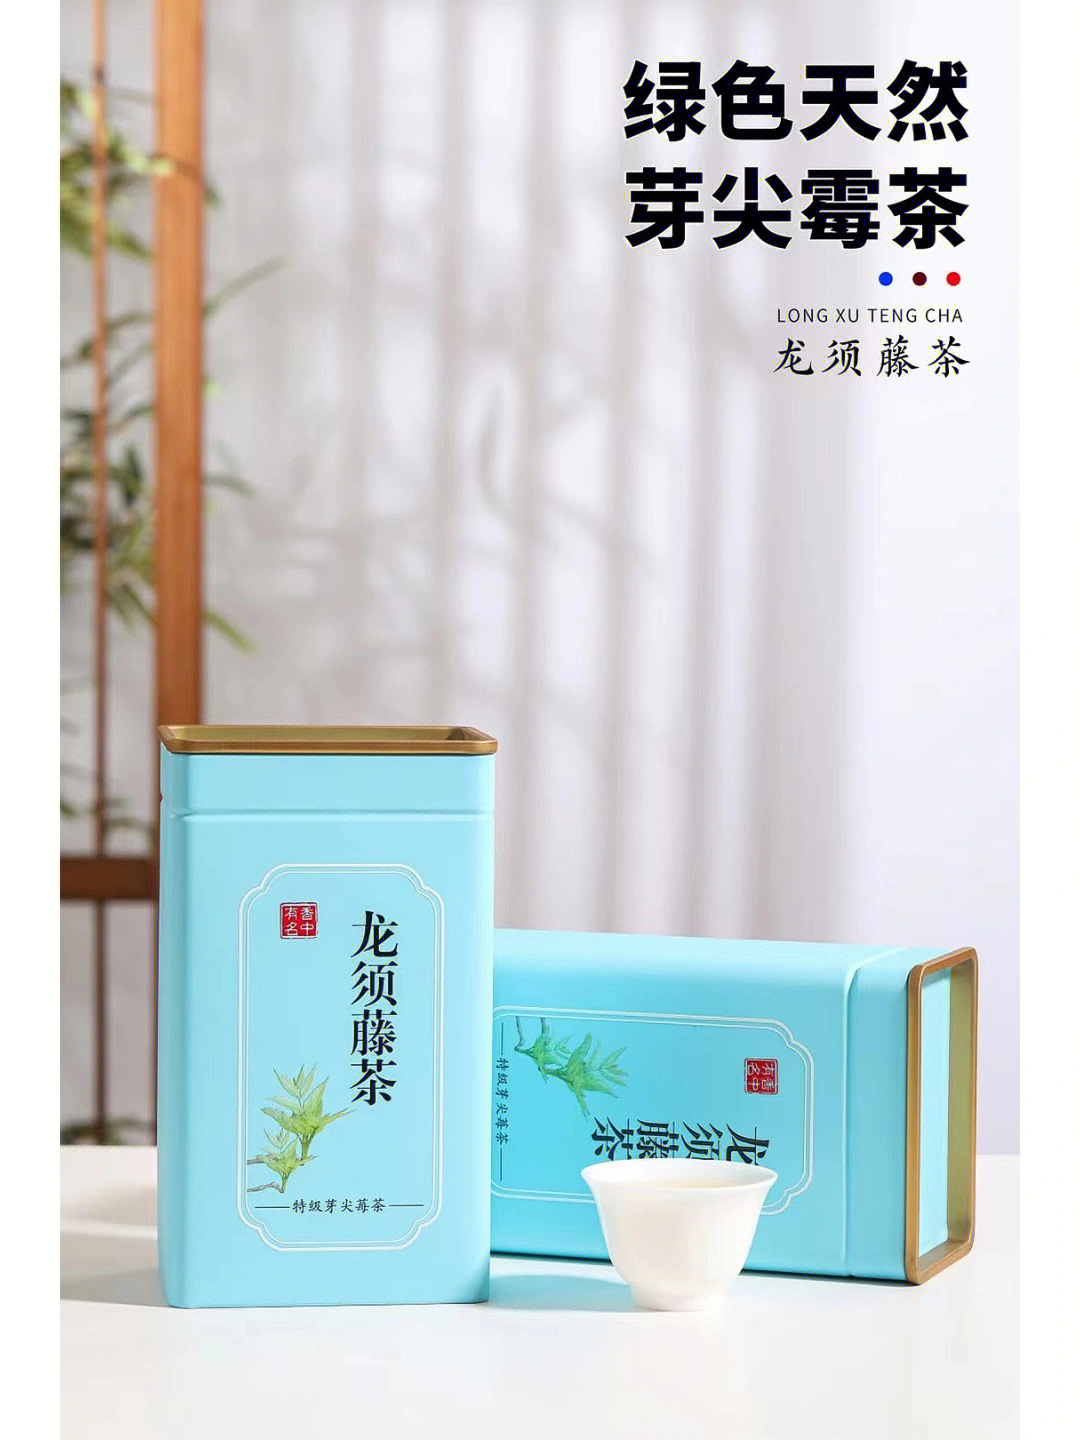 神秘湘西永顺莓茶广告图片